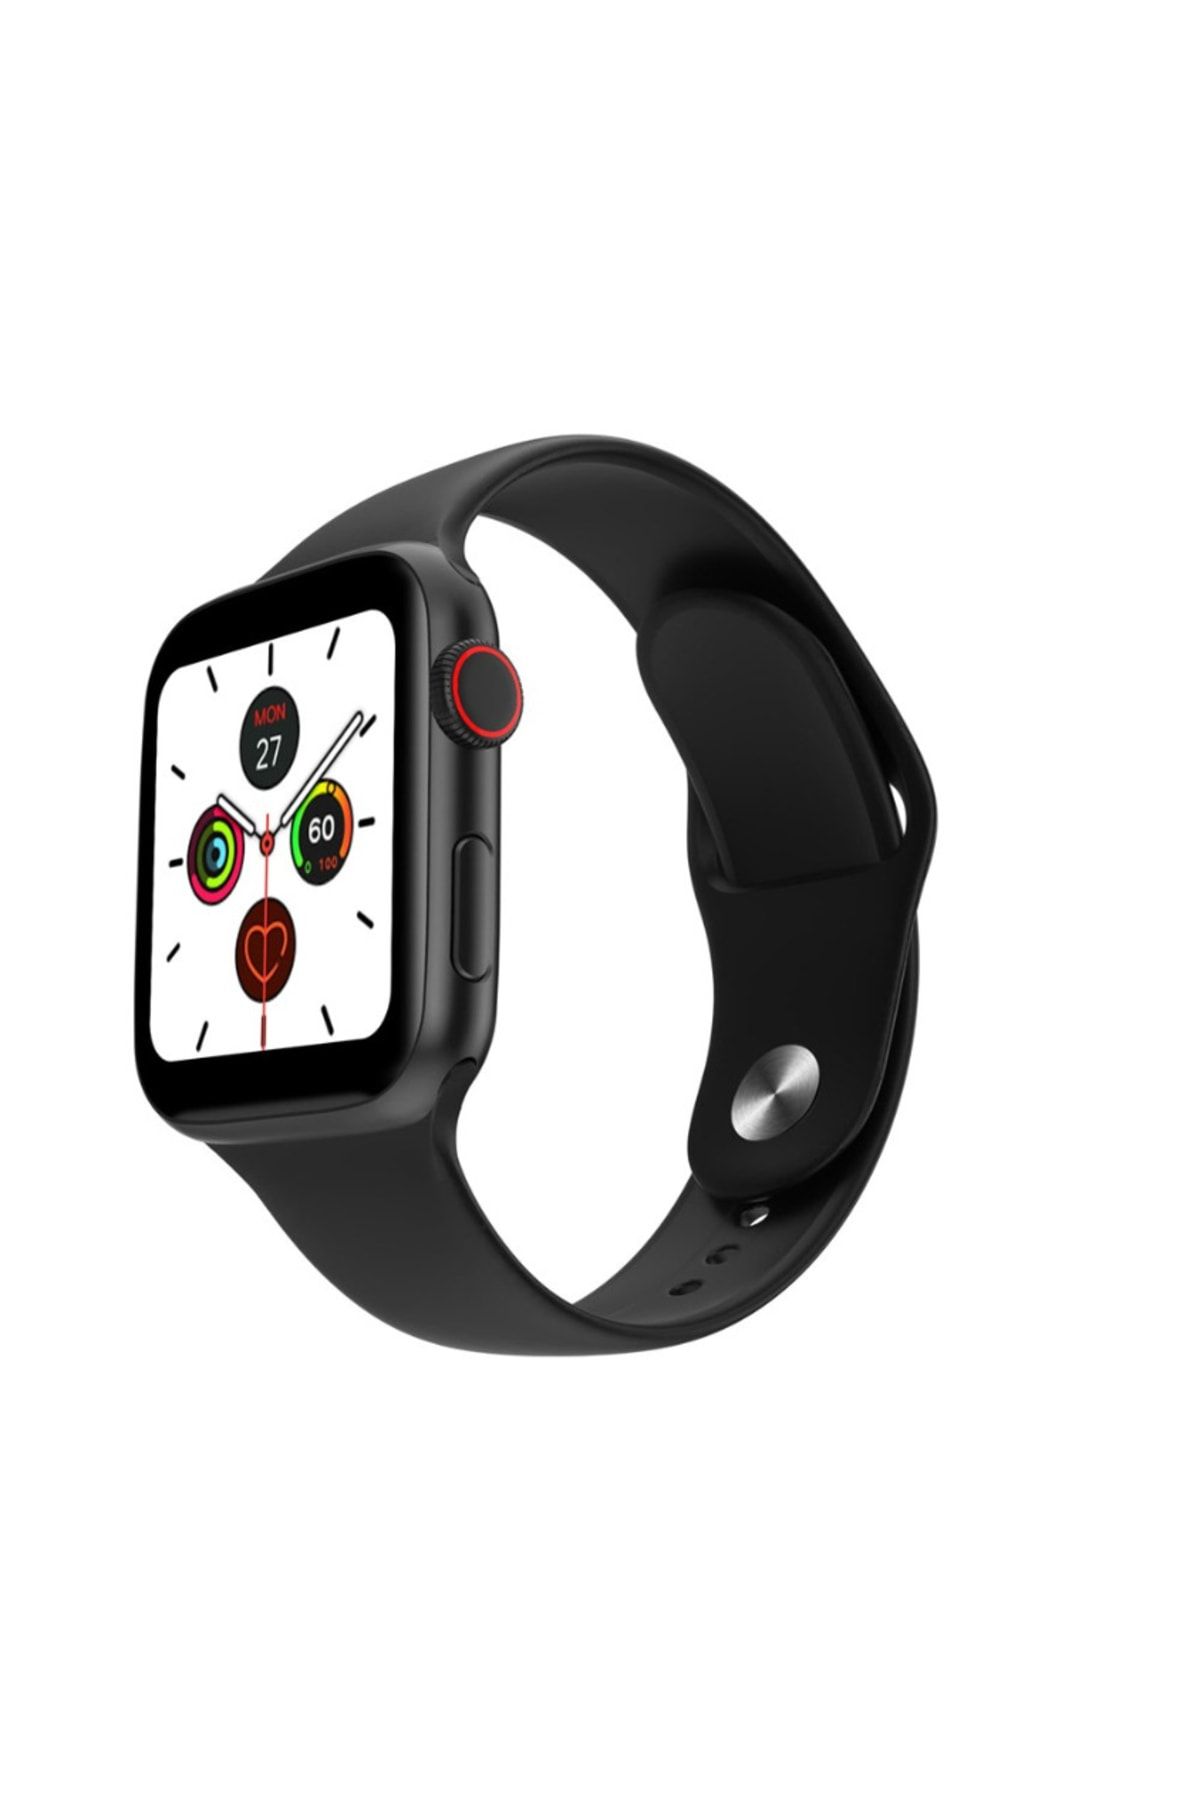 Mbois Tasarım Harikası T500 Smart Watch - Ios Uyumlu Türkçe Menü Dokunmatik Akıllı Saat (siyah)